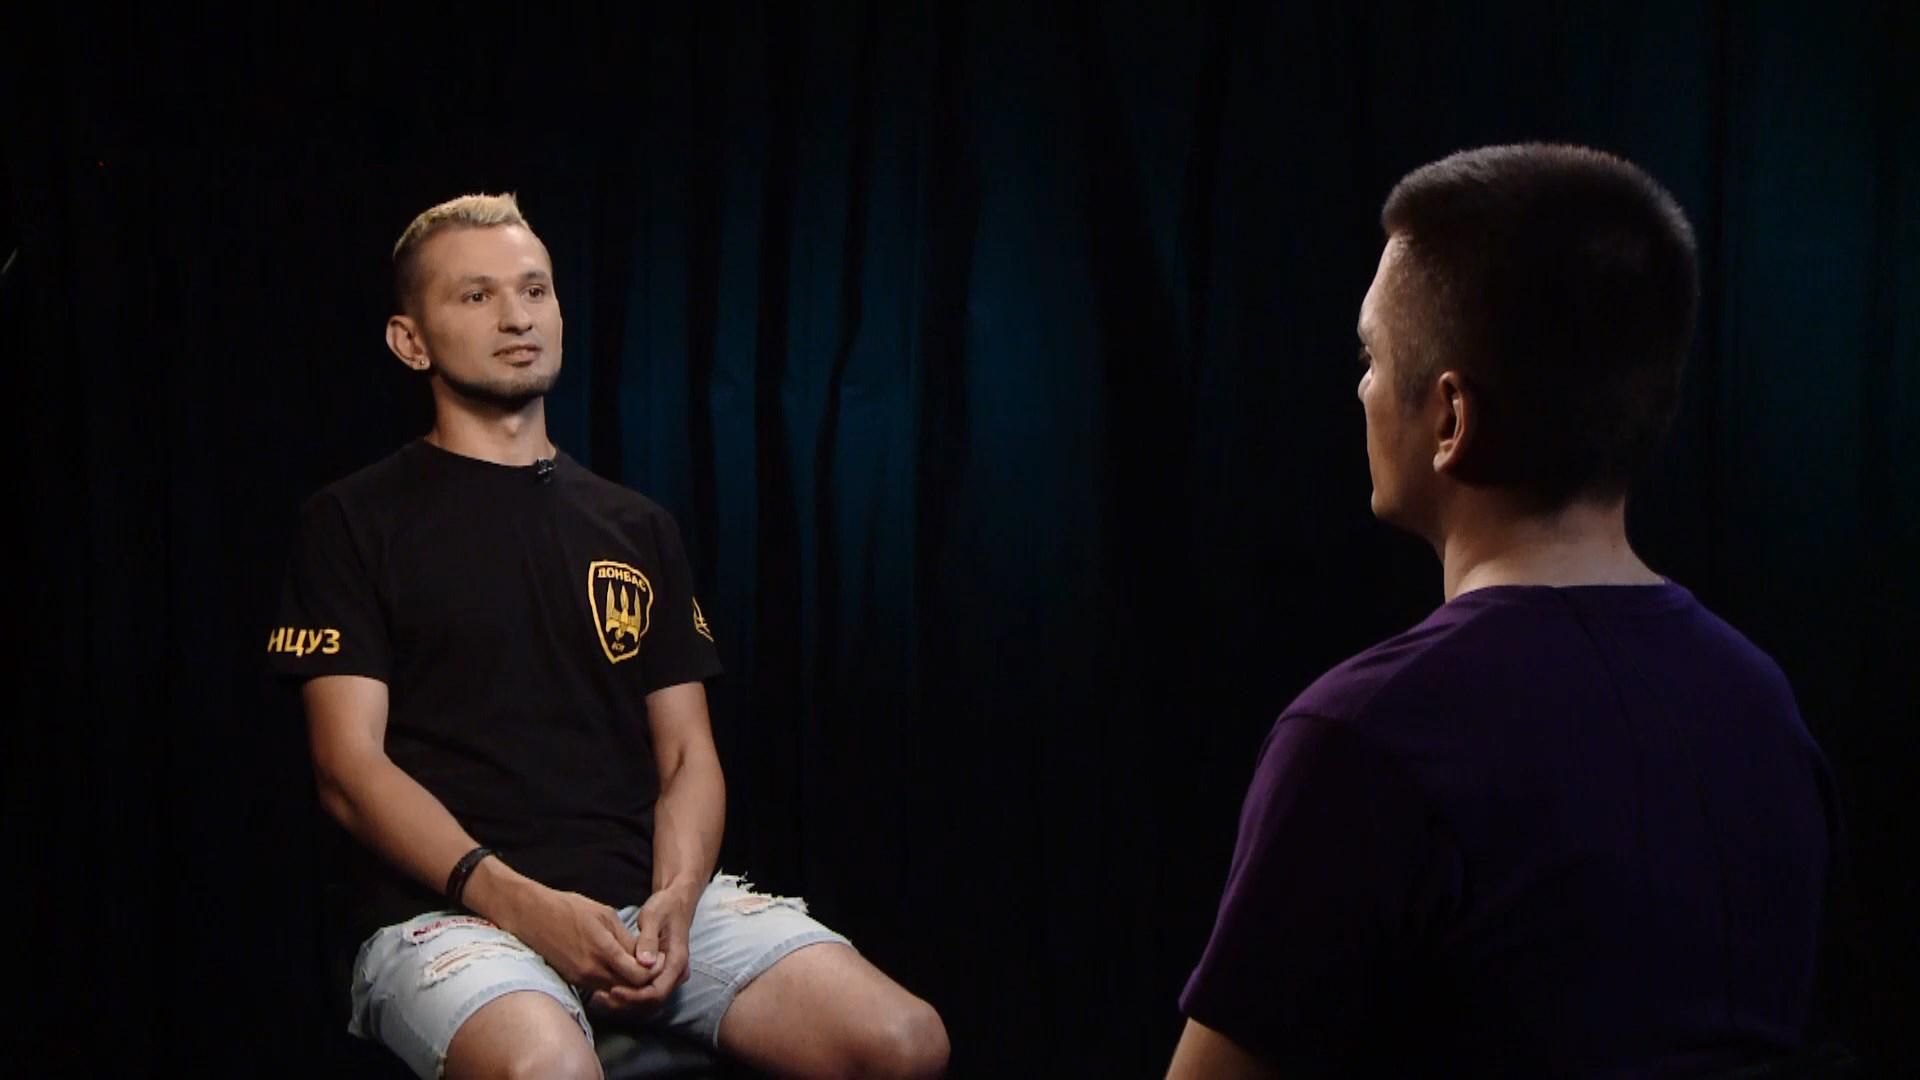 "Я засуджував себе": відверте інтерв'ю з бійцем-гомосексуалом, який воював на Донбасі - 22 червня 2019 - Телеканал новин 24